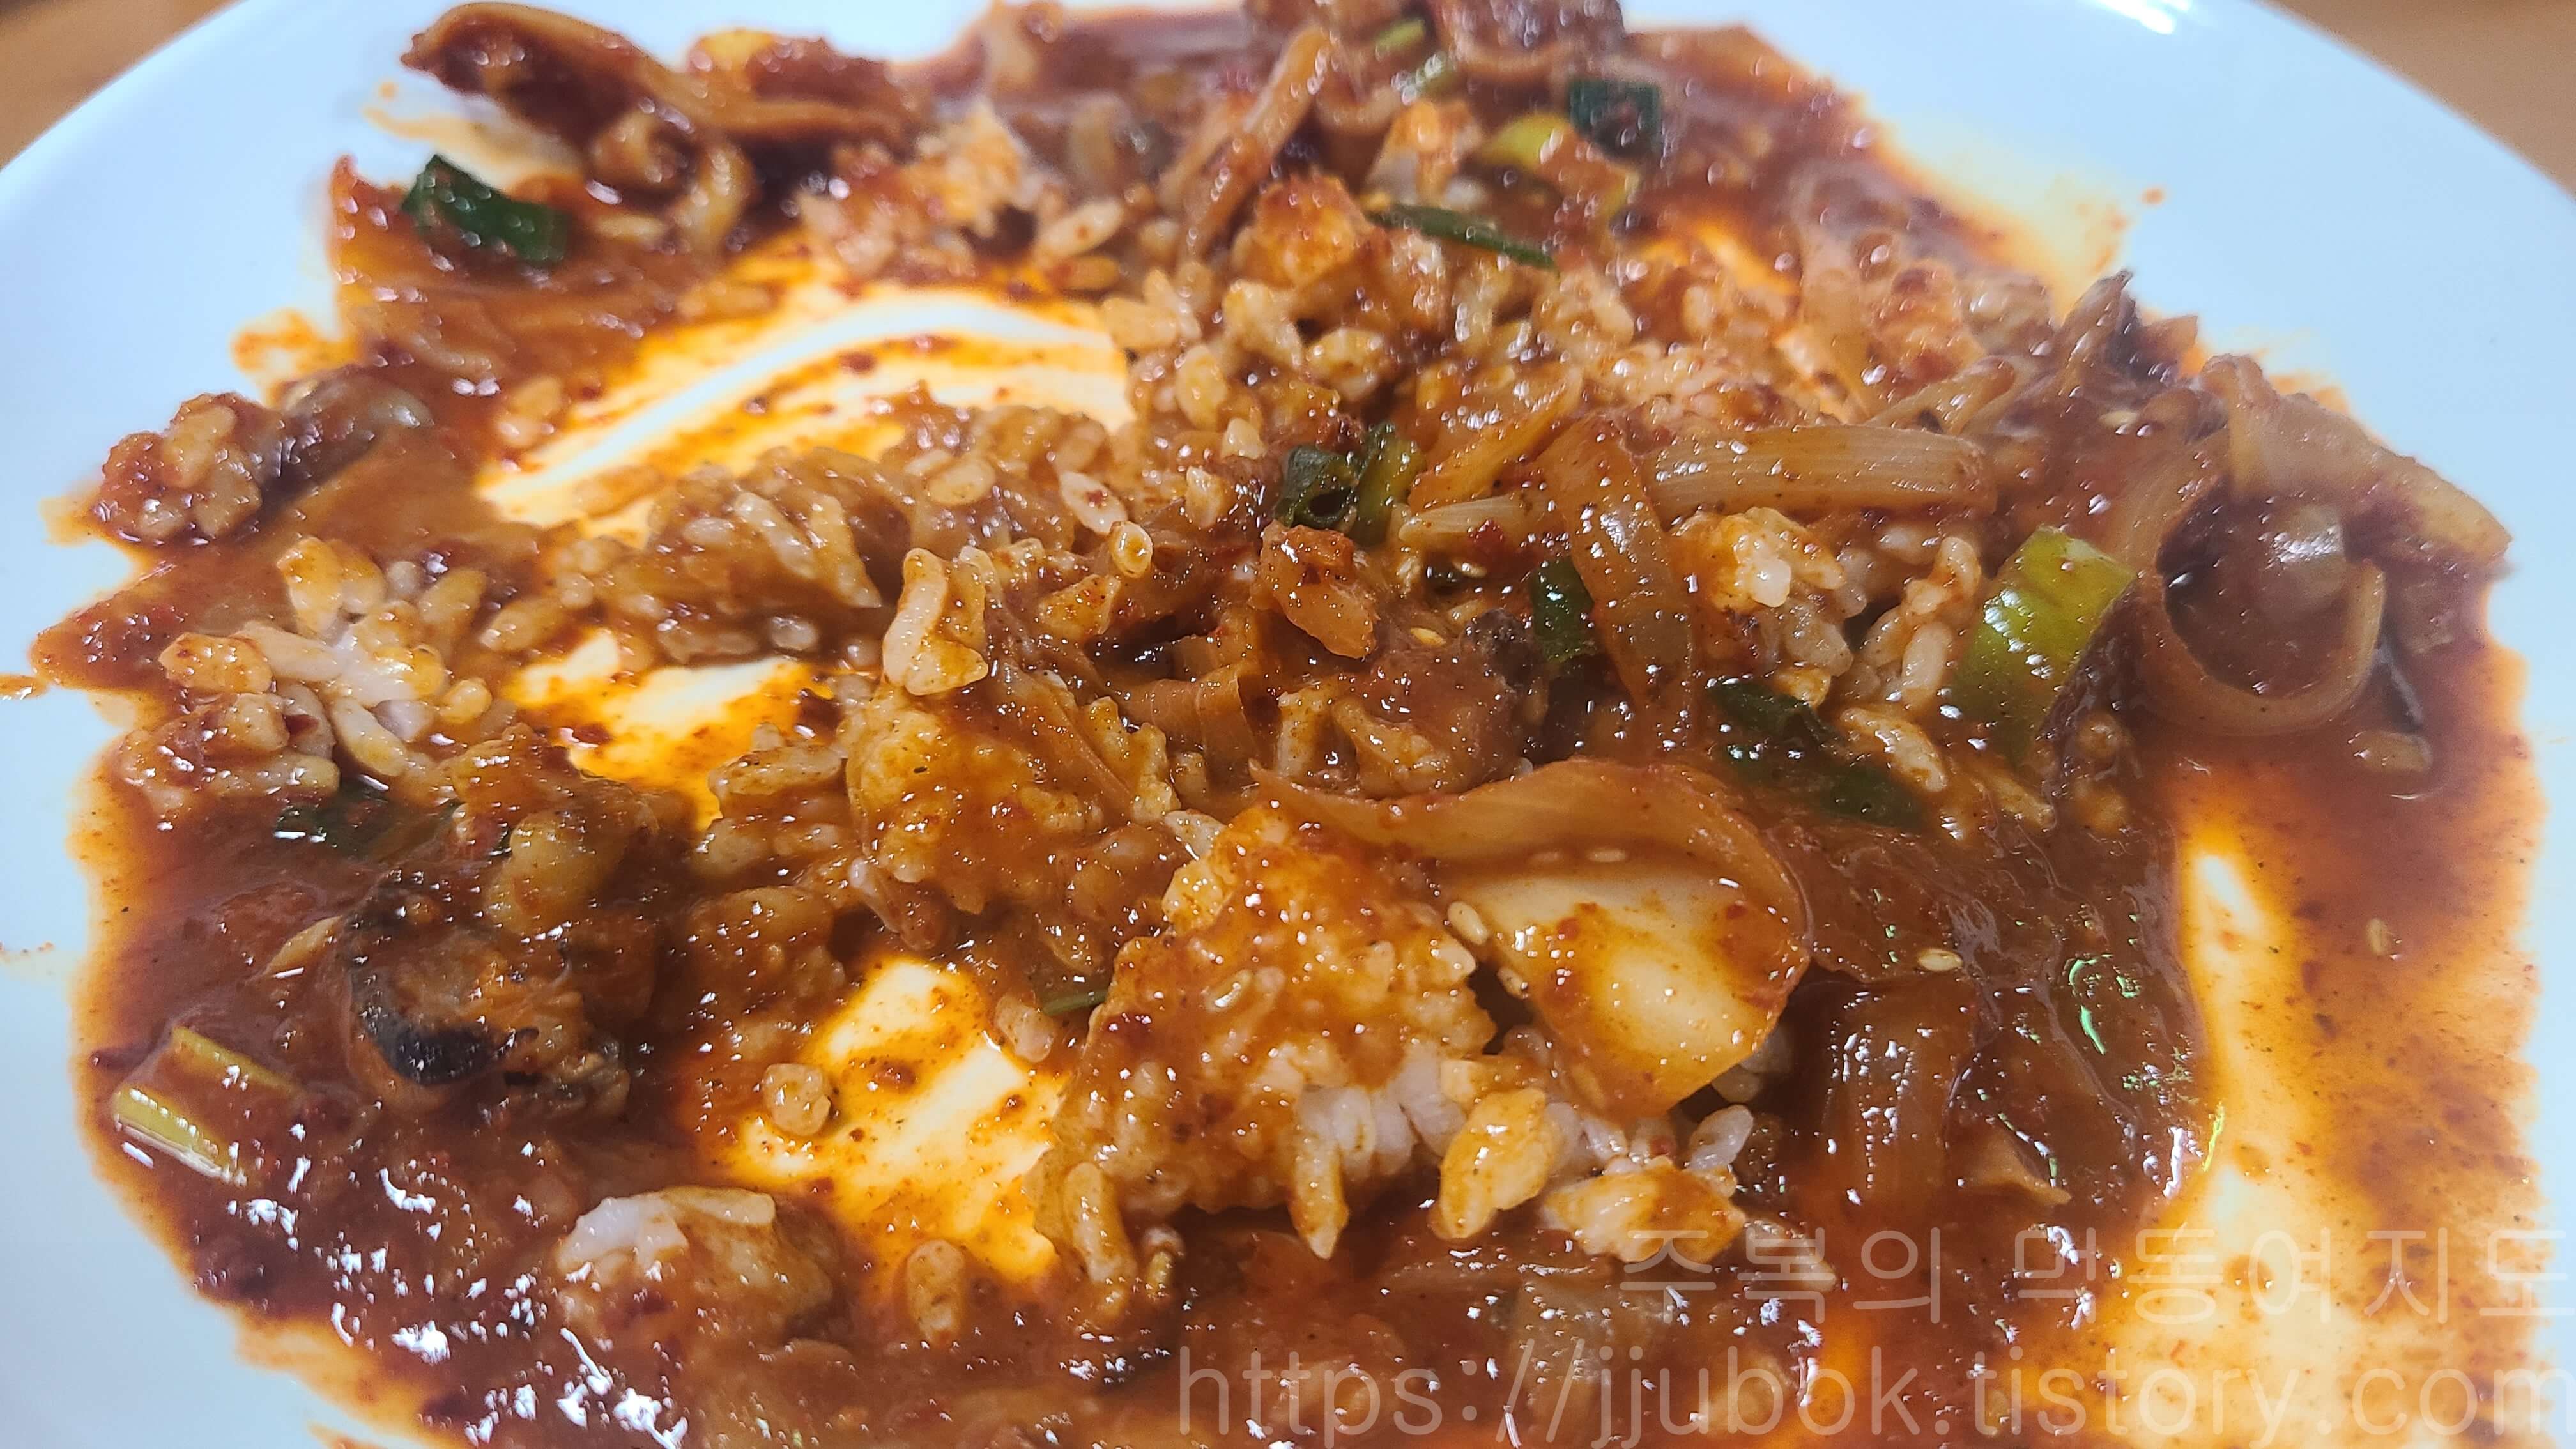 부흥기사식당-오징어볶음-비빔밥-맛